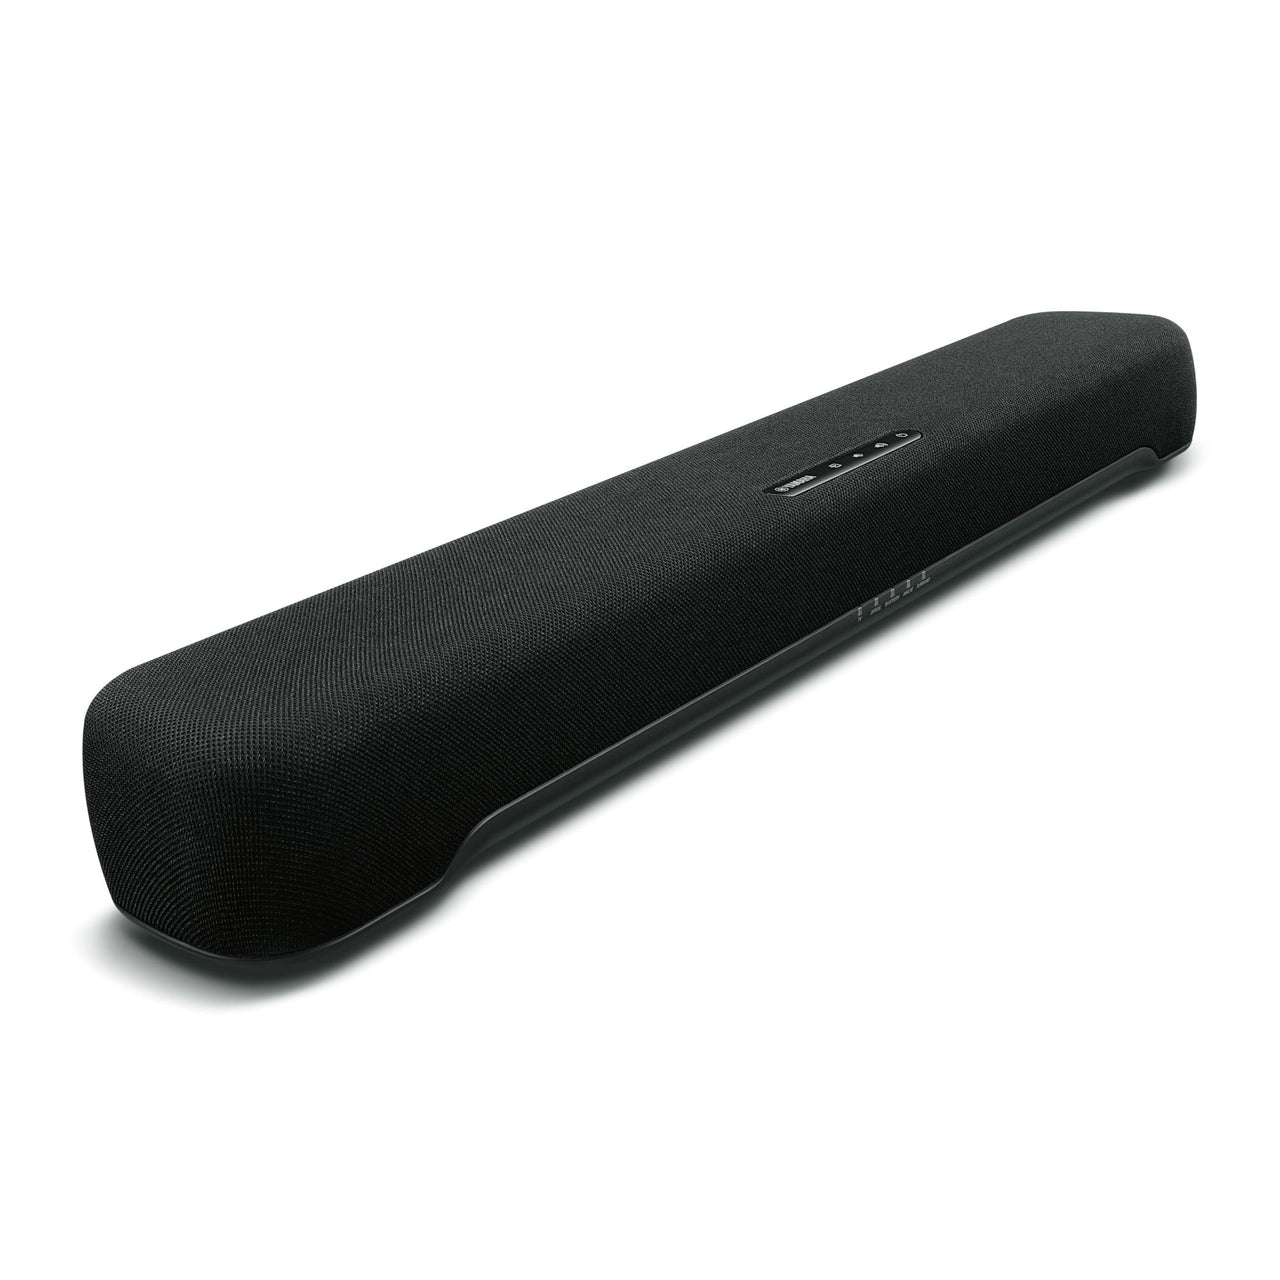 Yamaha SR-C20A Sound Bar